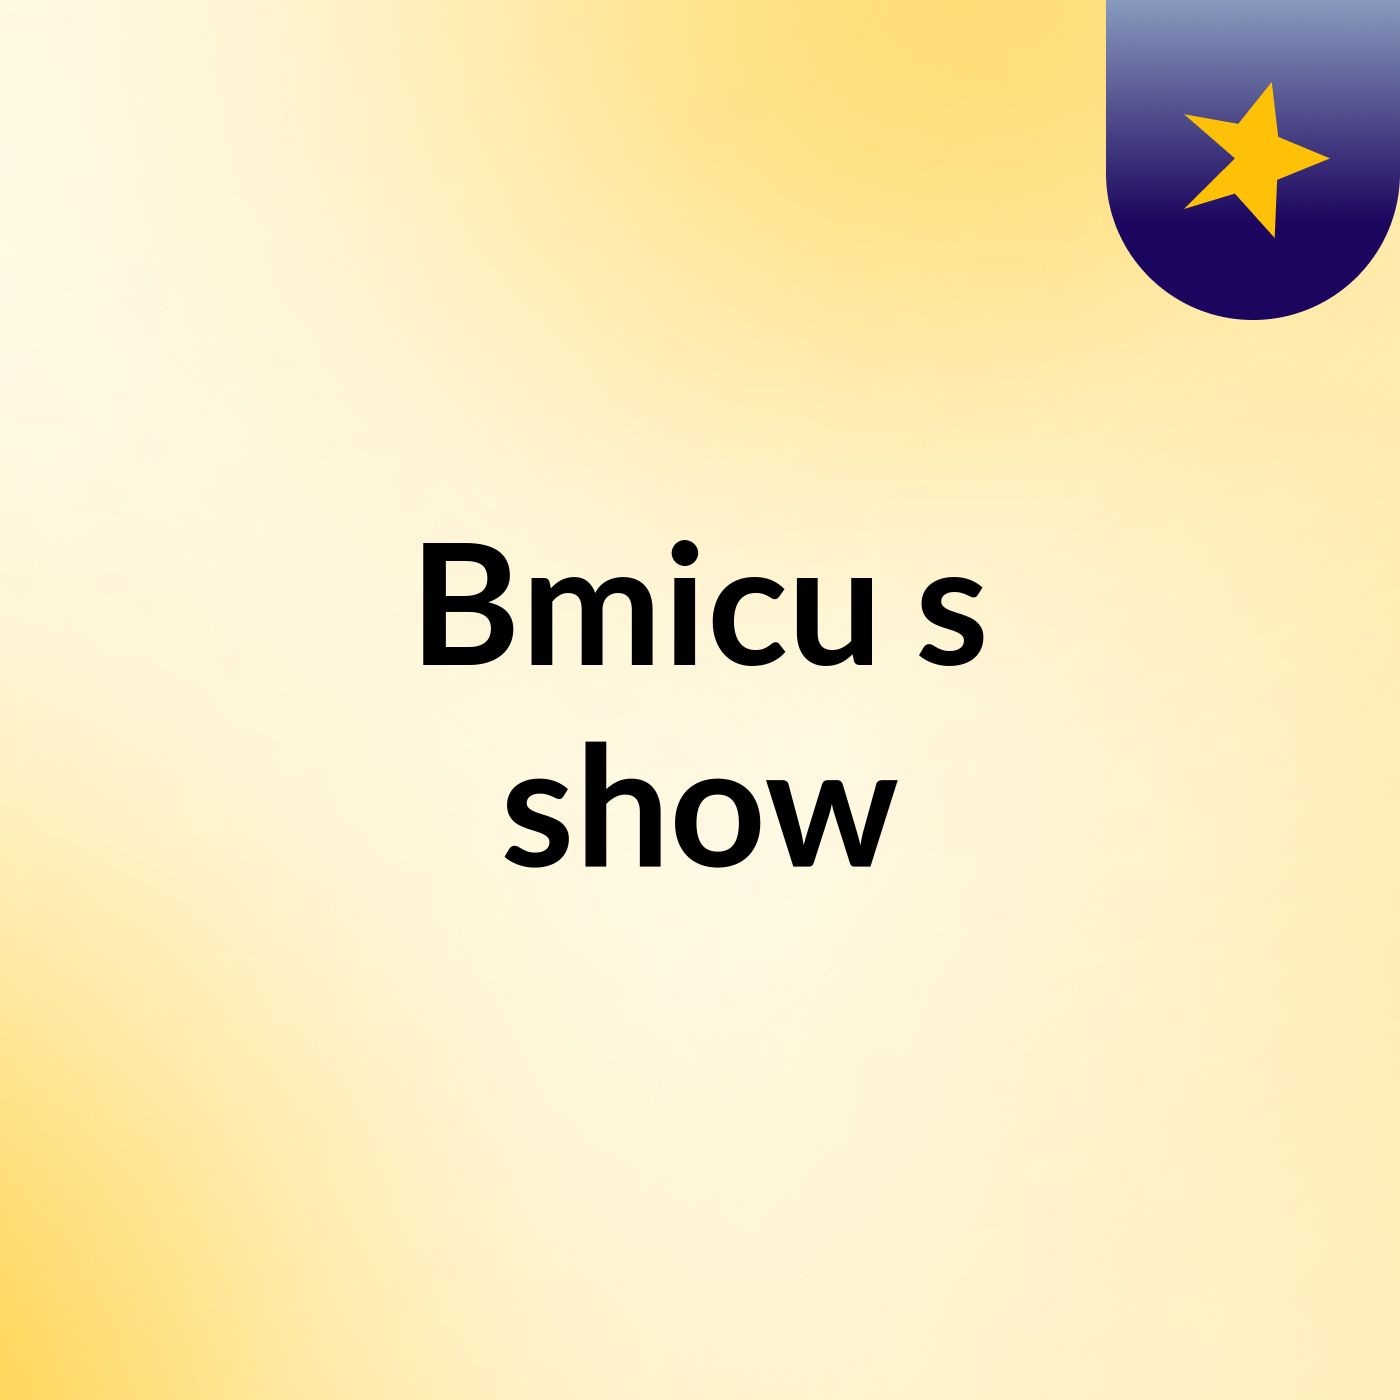 Bmicu's show